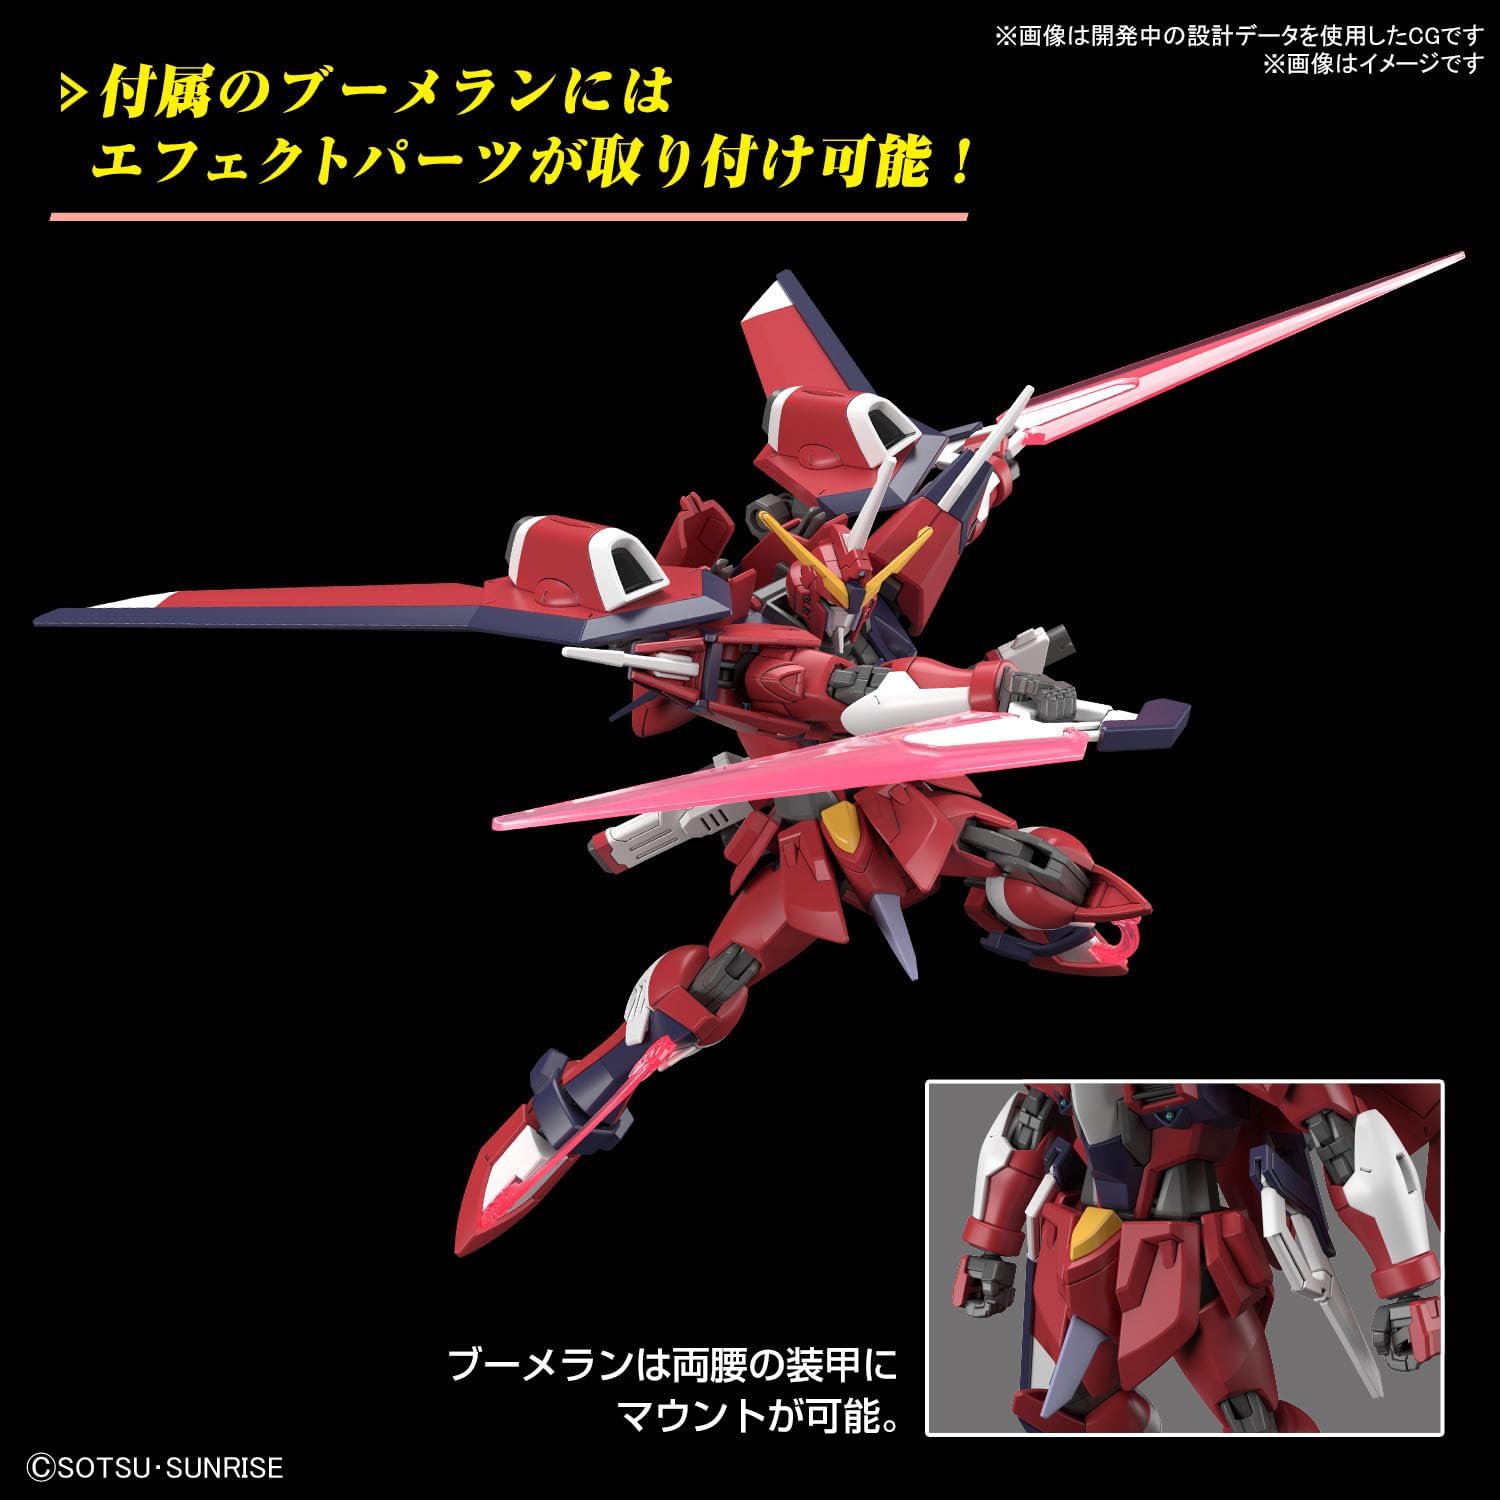 Bandai HGCE244 Immortal Justice Gundam - BanzaiHobby